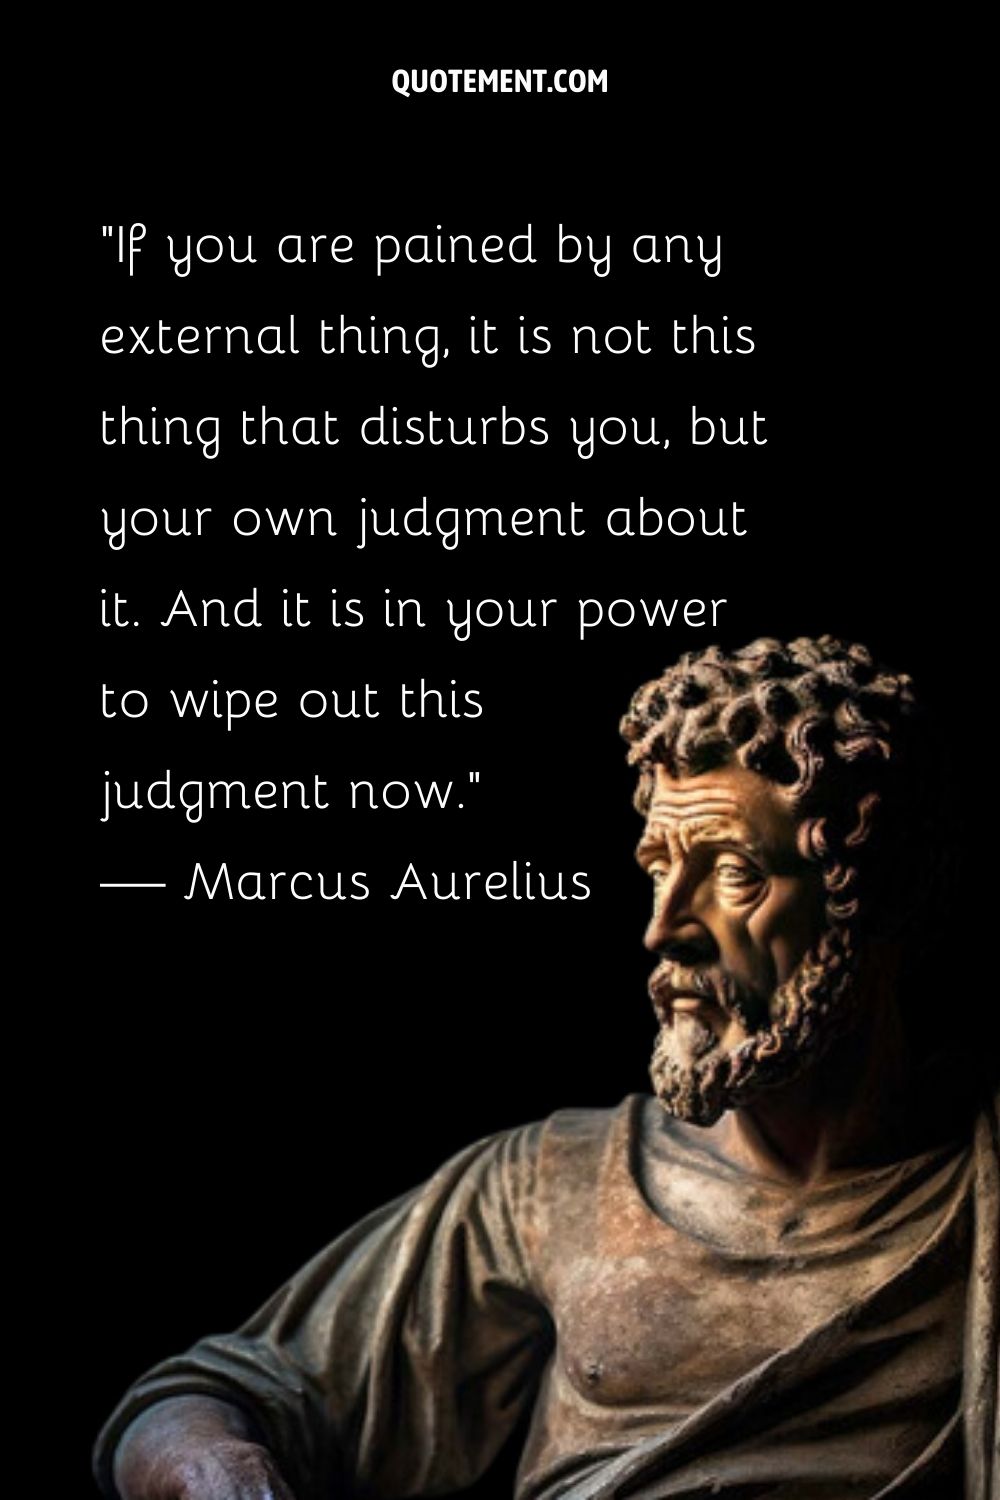 Marcus Aurelius' wisdom sculpted gracefully.